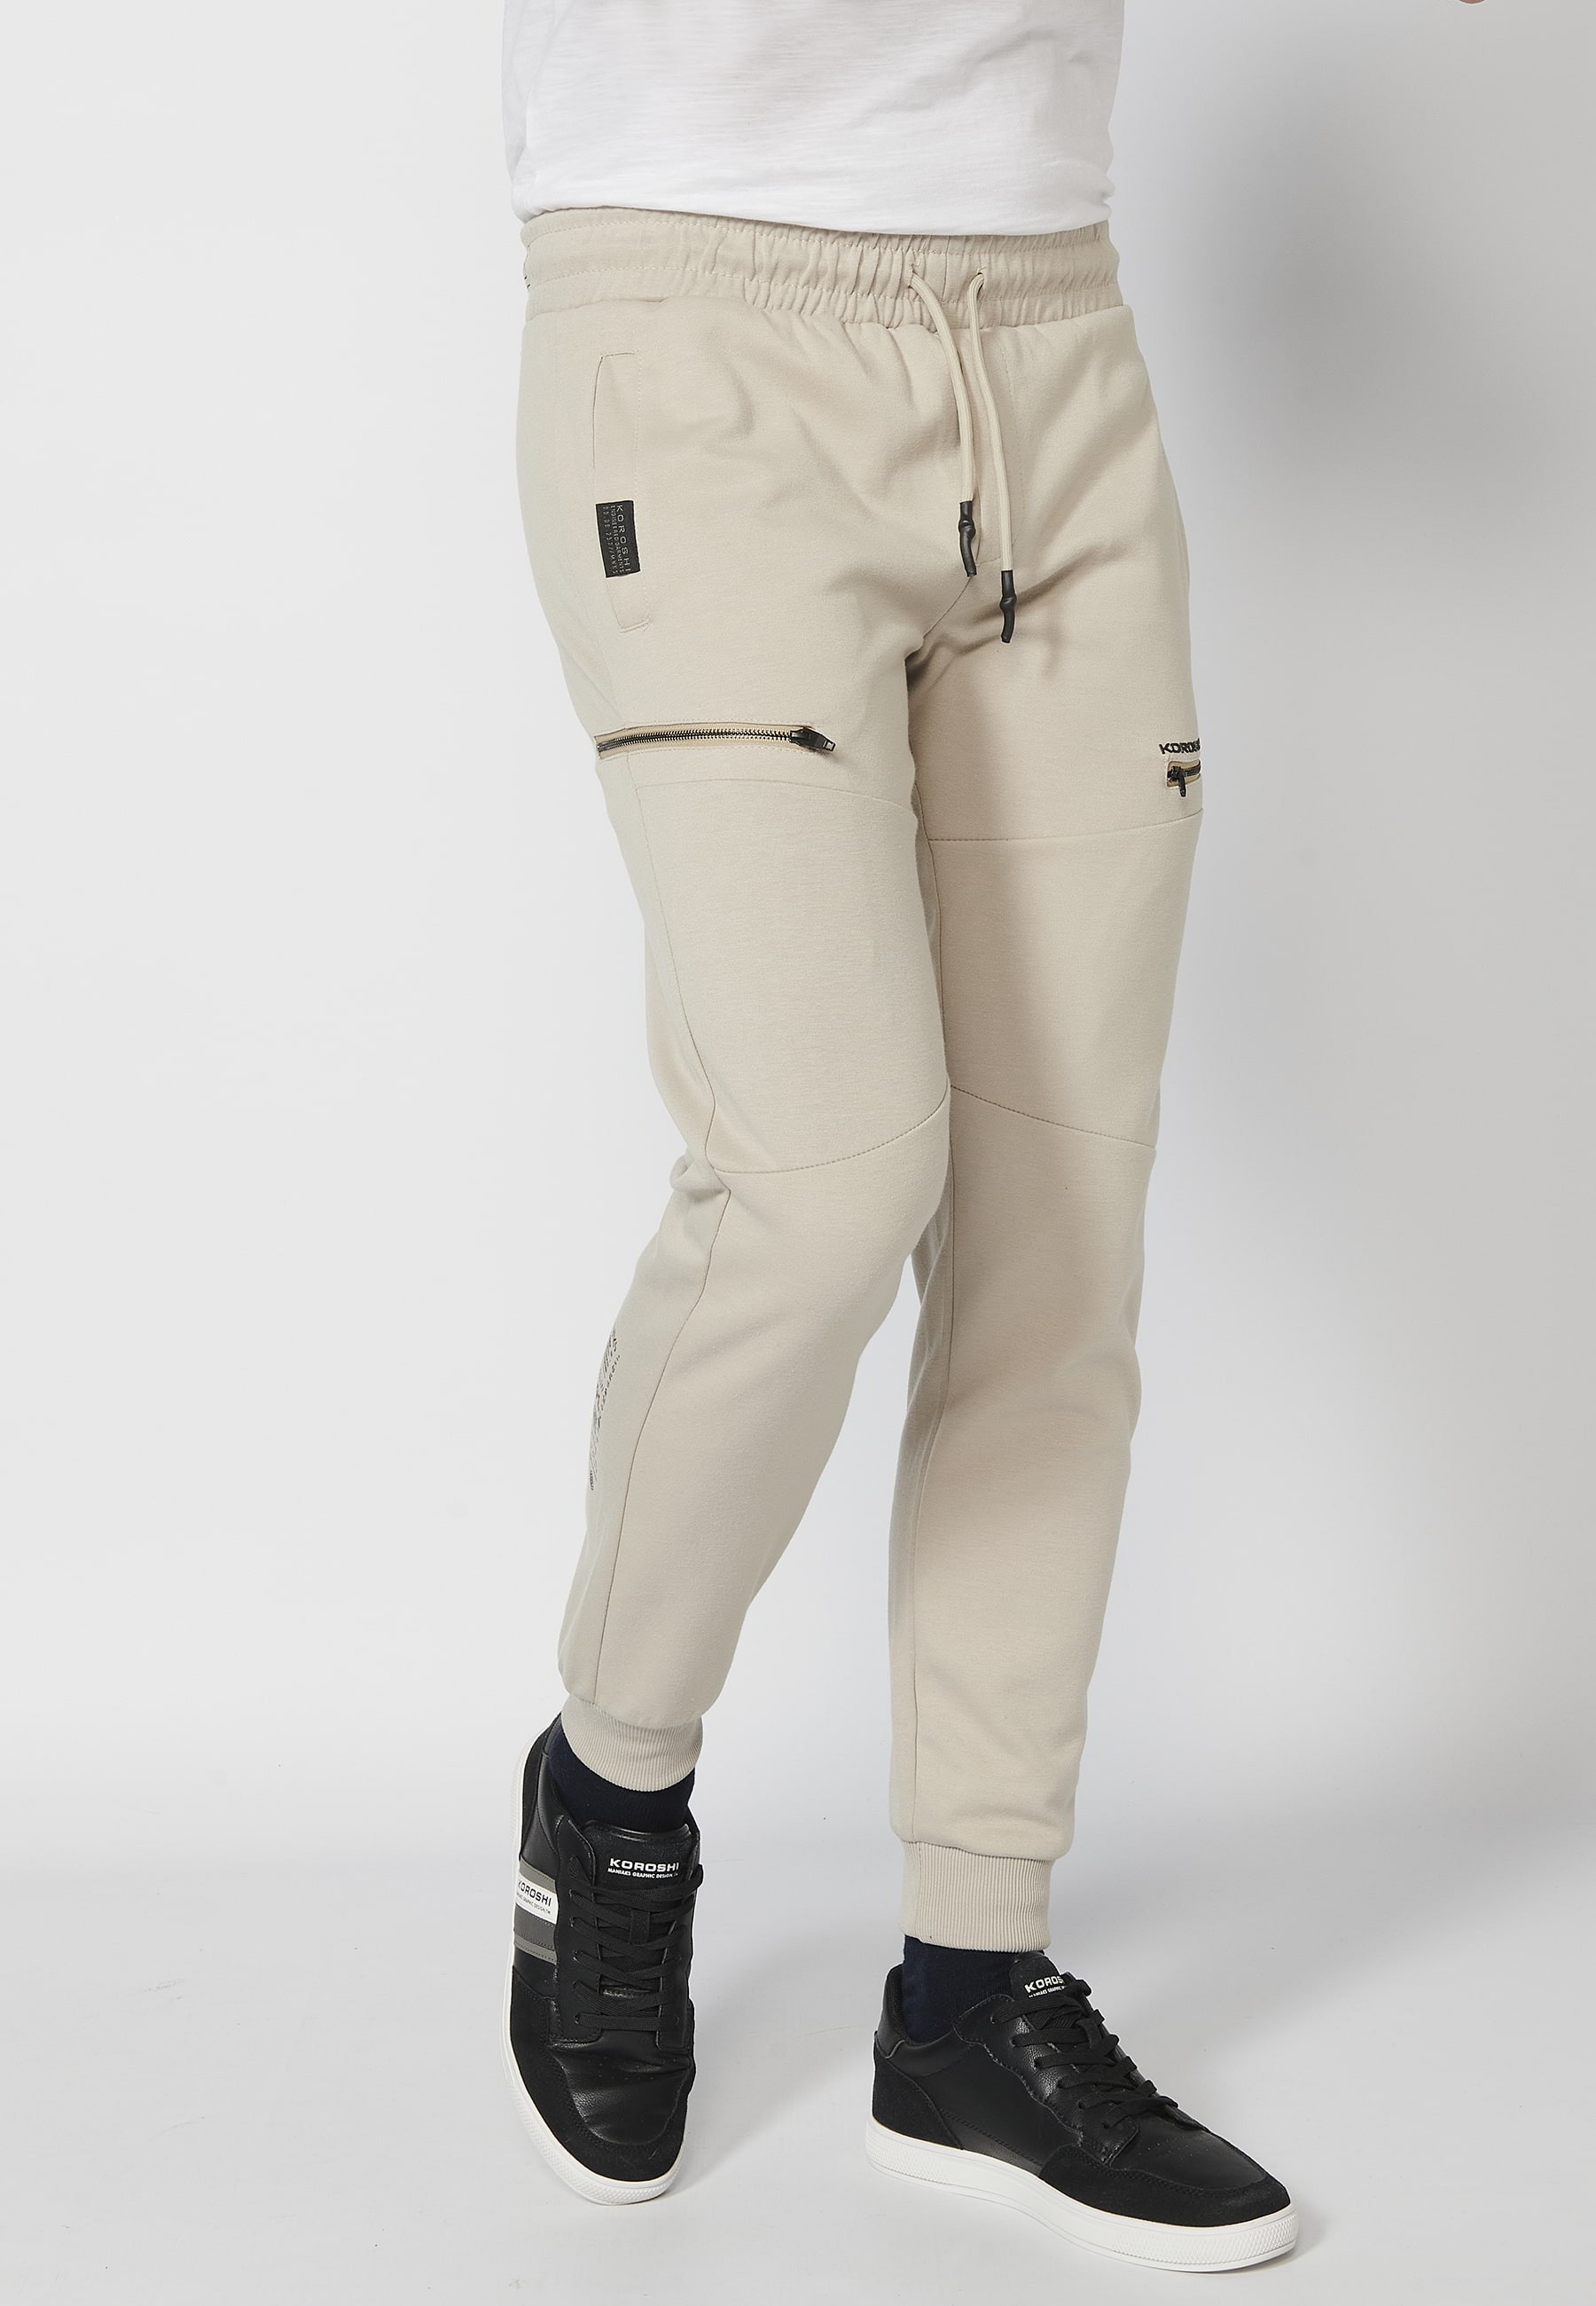 Pantalon de jogging long avec taille caoutchoutée et cordon de serrage avec découpes aux genoux, couleur Stone, pour Homme 1